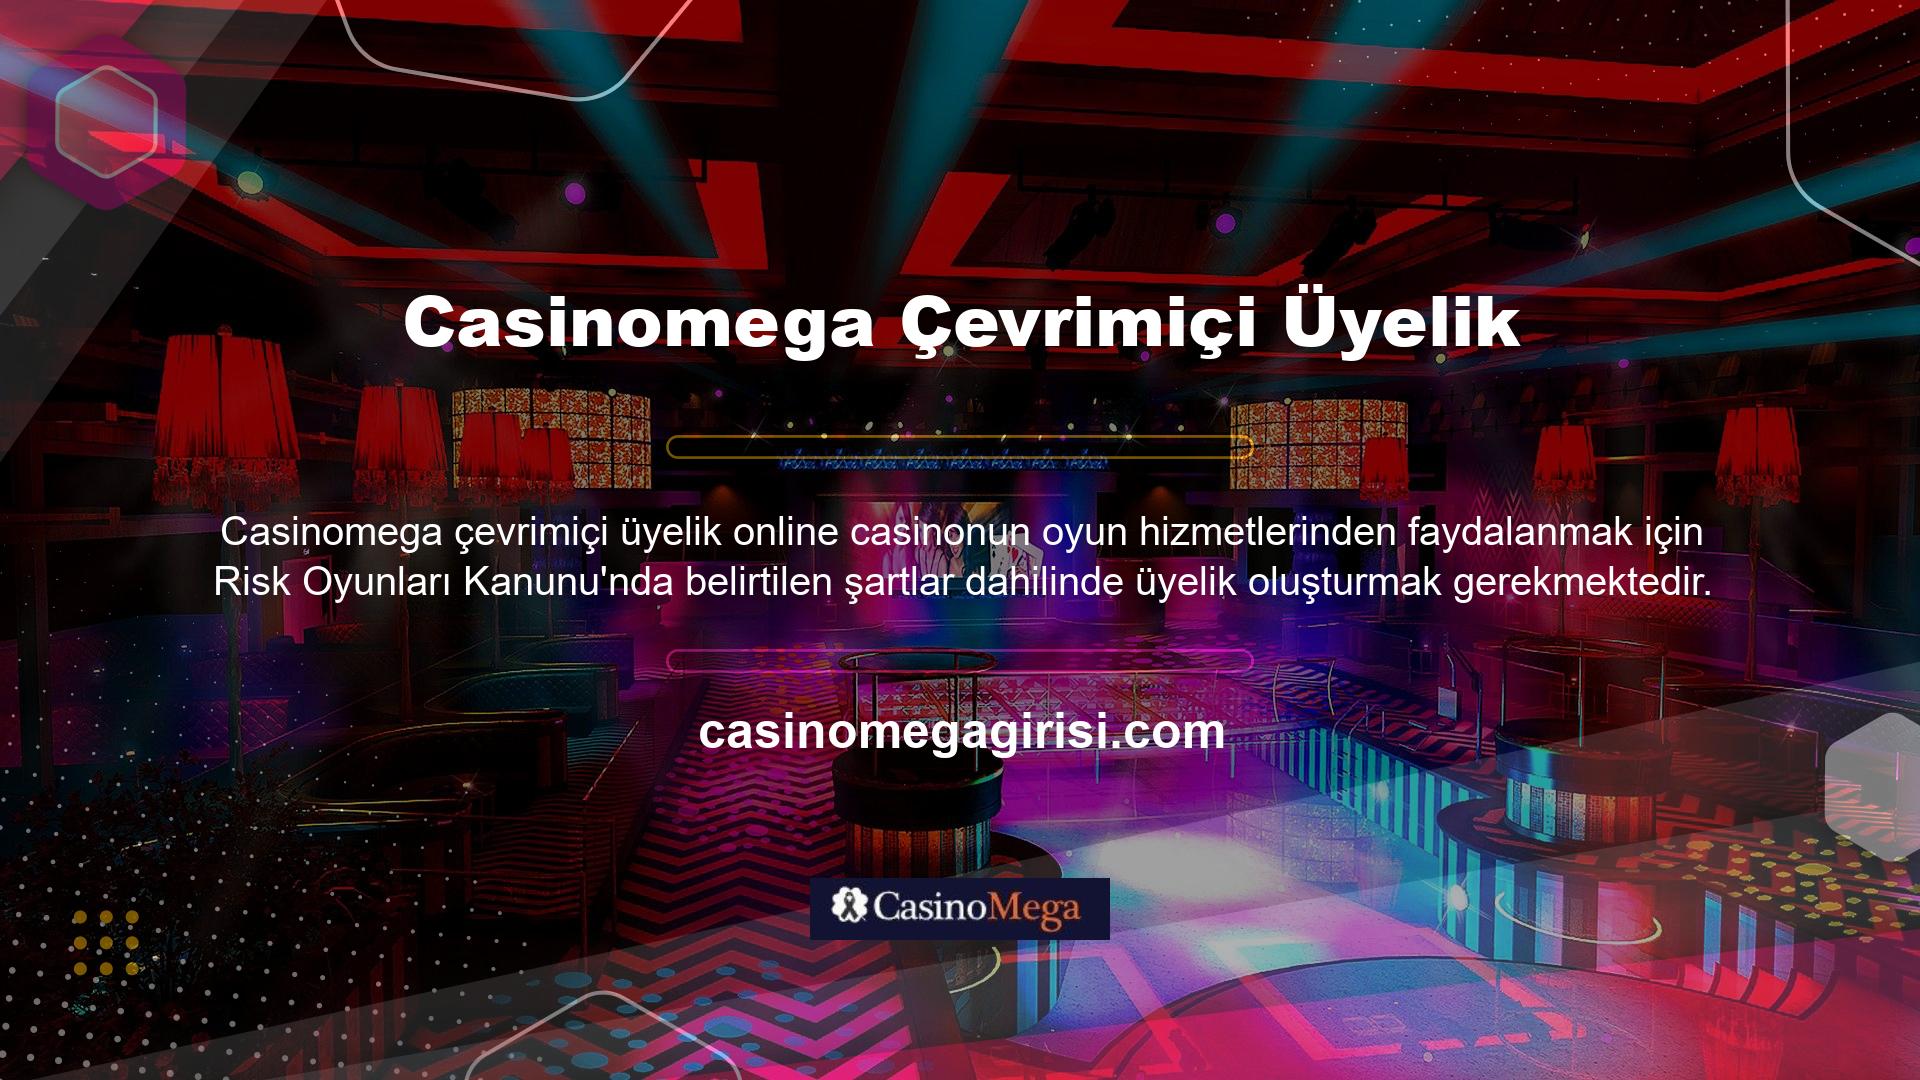 Casinomega Casino web sitesi, tüm oyun hizmetlerini kullanıcılarına bir üye hesabı üzerinden sunmaktadır